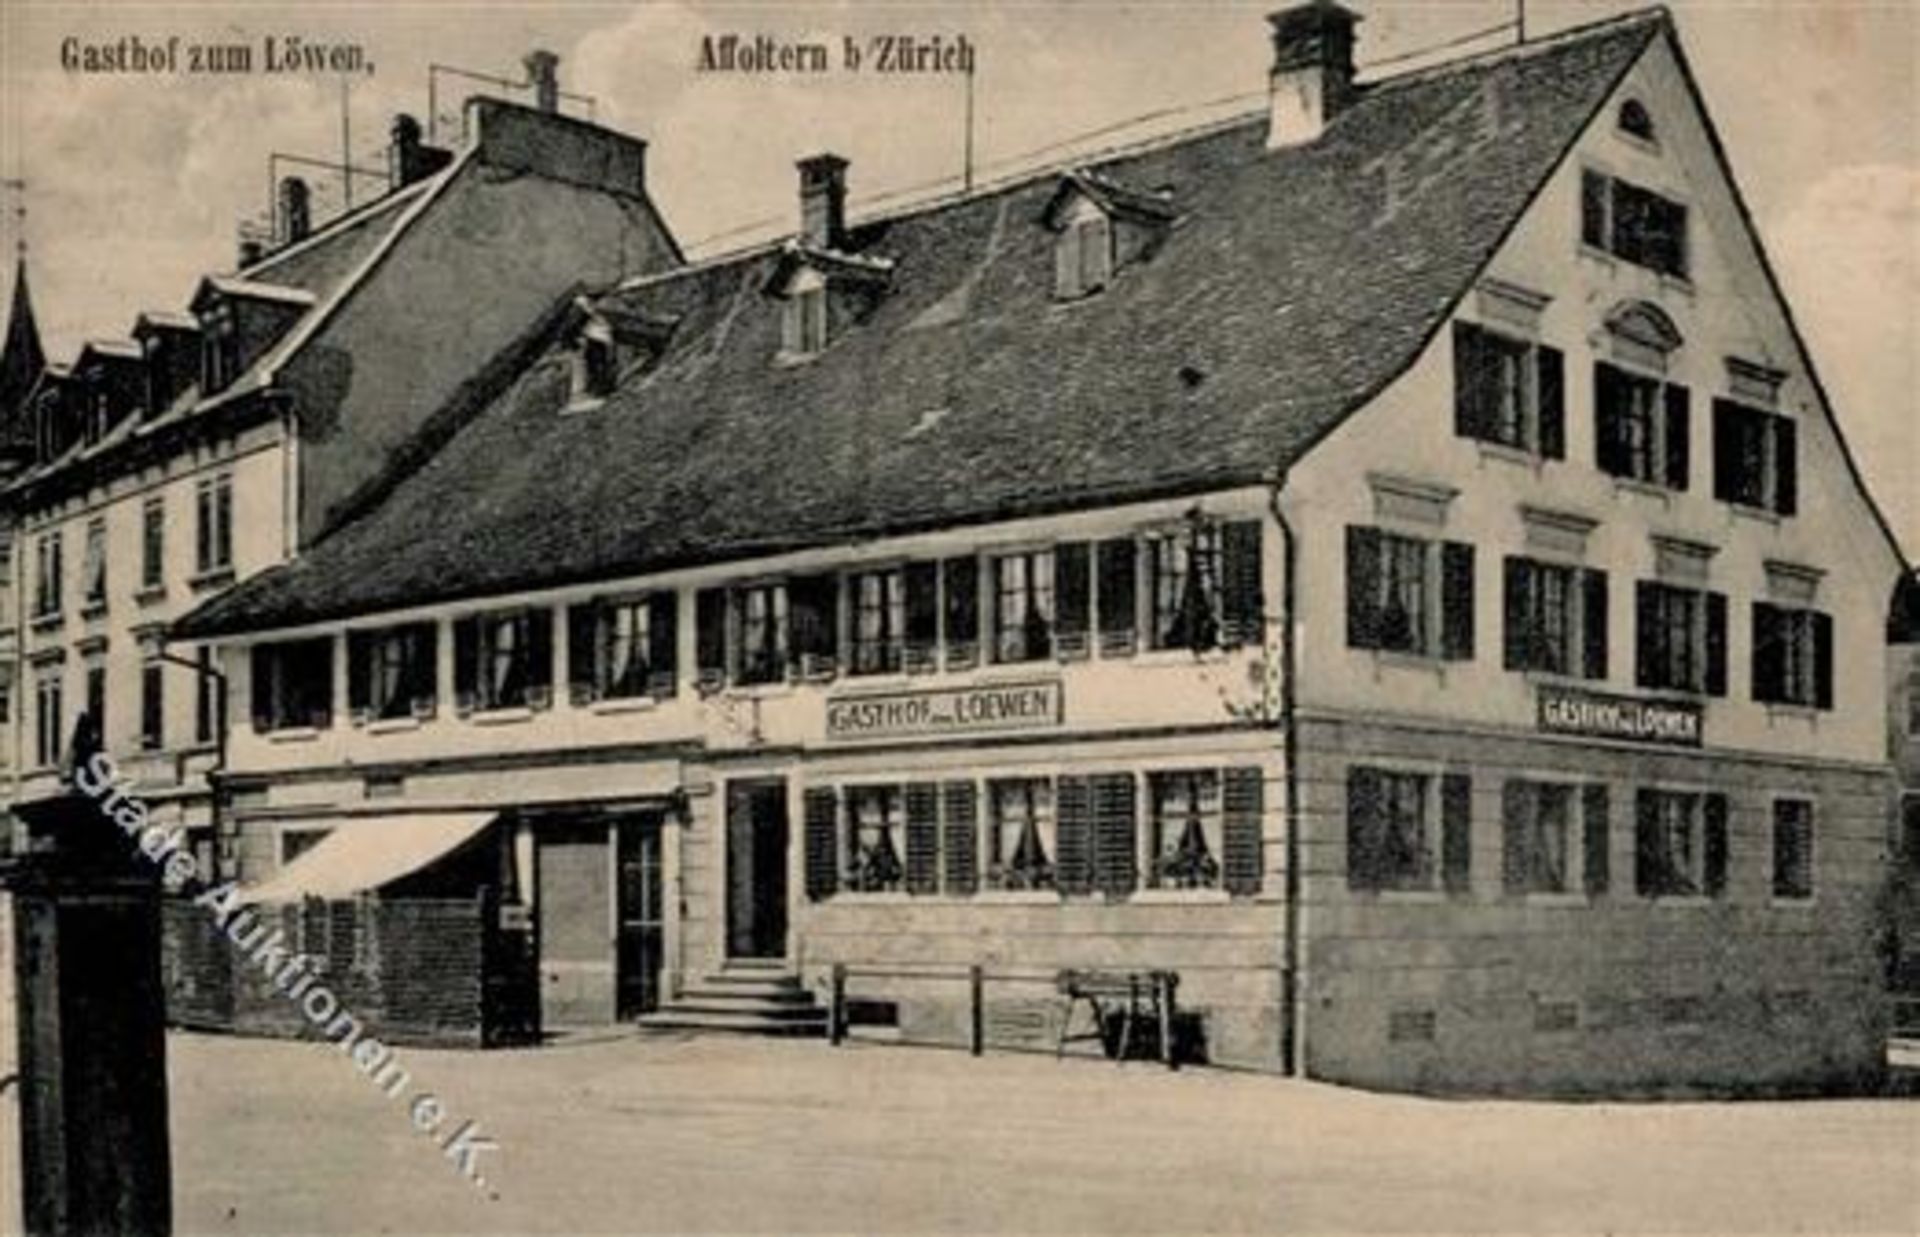 Affoltern am Albis (8910) Schweiz Gasthaus zum Löwen I-IIDieses Los wird in einer online-Auktion